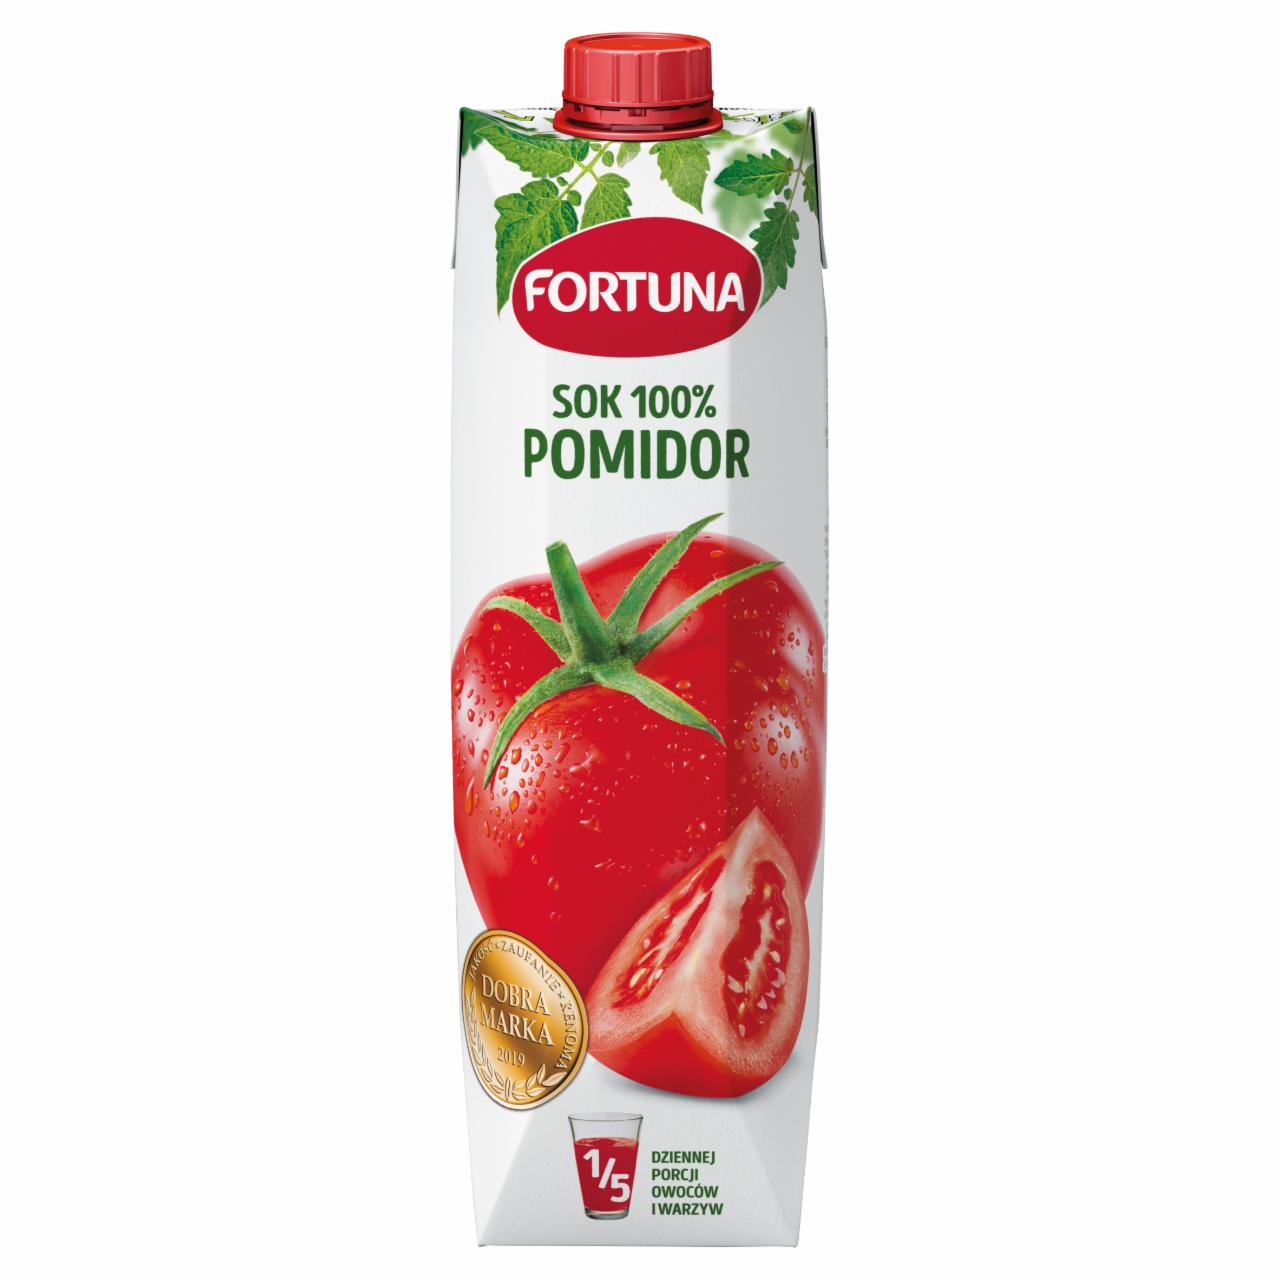 Zdjęcia - Fortuna Sok 100 % pomidor 1 l